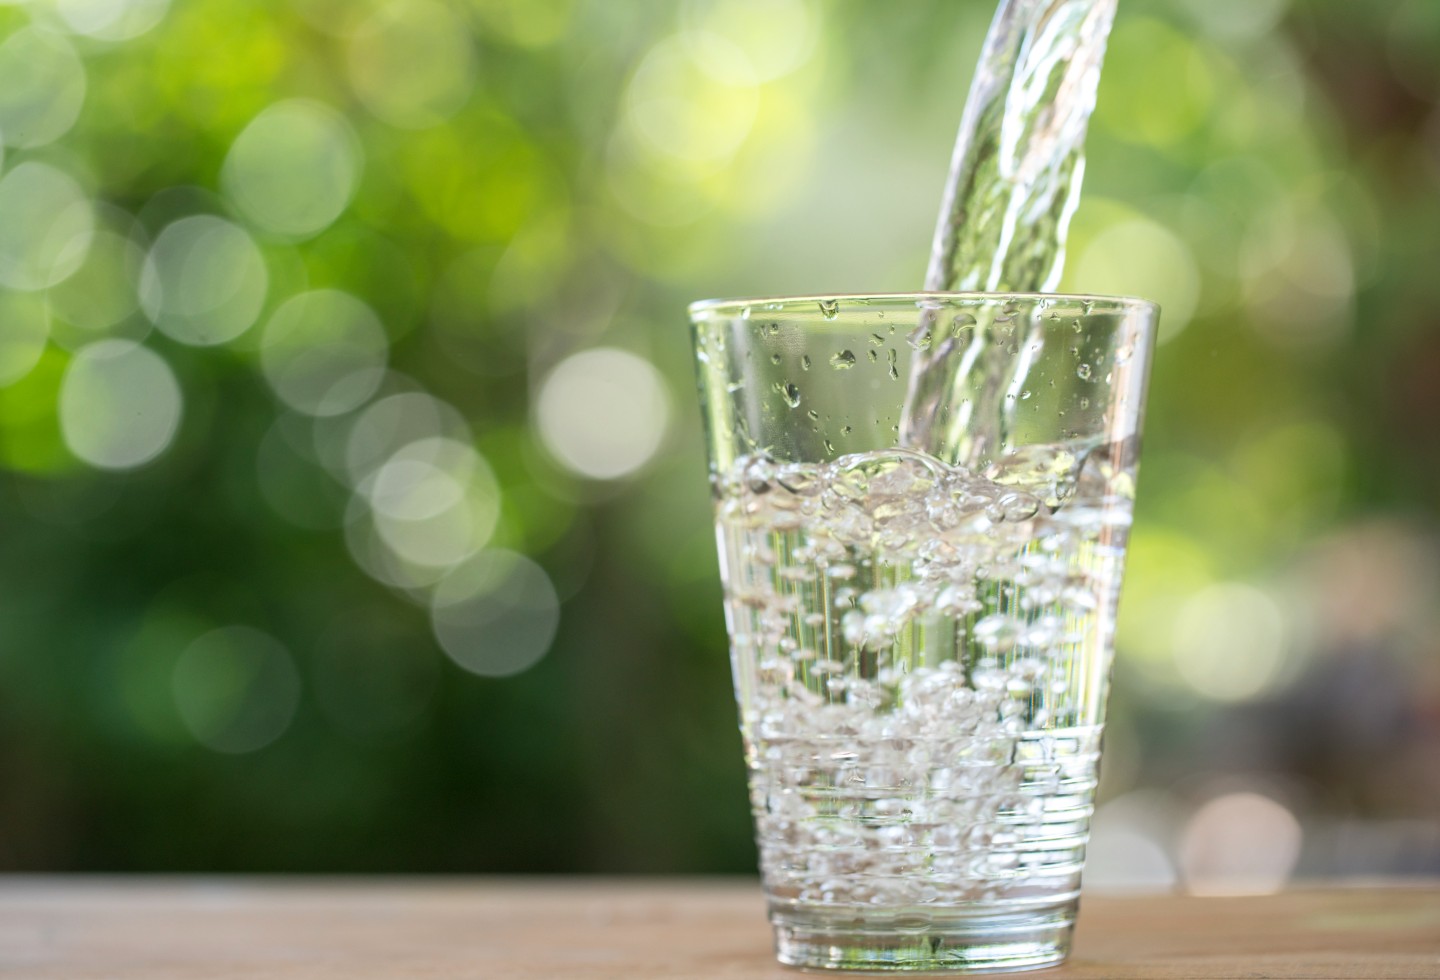 Tomar agua ayuda en la digestión y mantiene hidratado el cuerpo